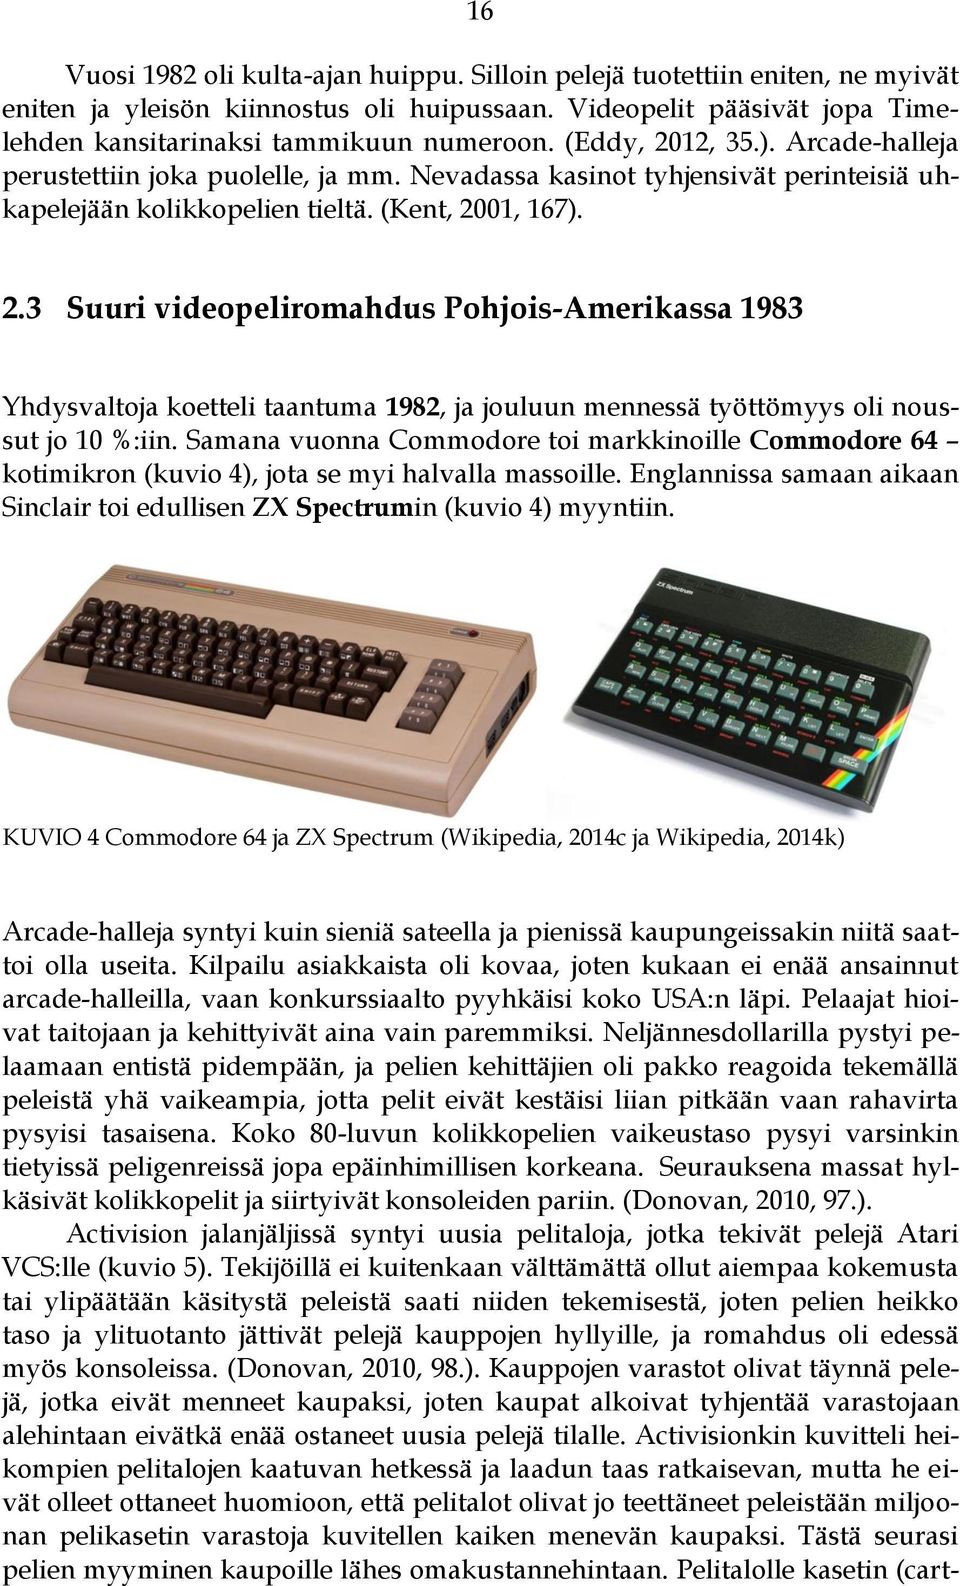 Samana vuonna Commodore toi markkinoille Commodore 64 kotimikron (kuvio 4), jota se myi halvalla massoille. Englannissa samaan aikaan Sinclair toi edullisen ZX Spectrumin (kuvio 4) myyntiin.